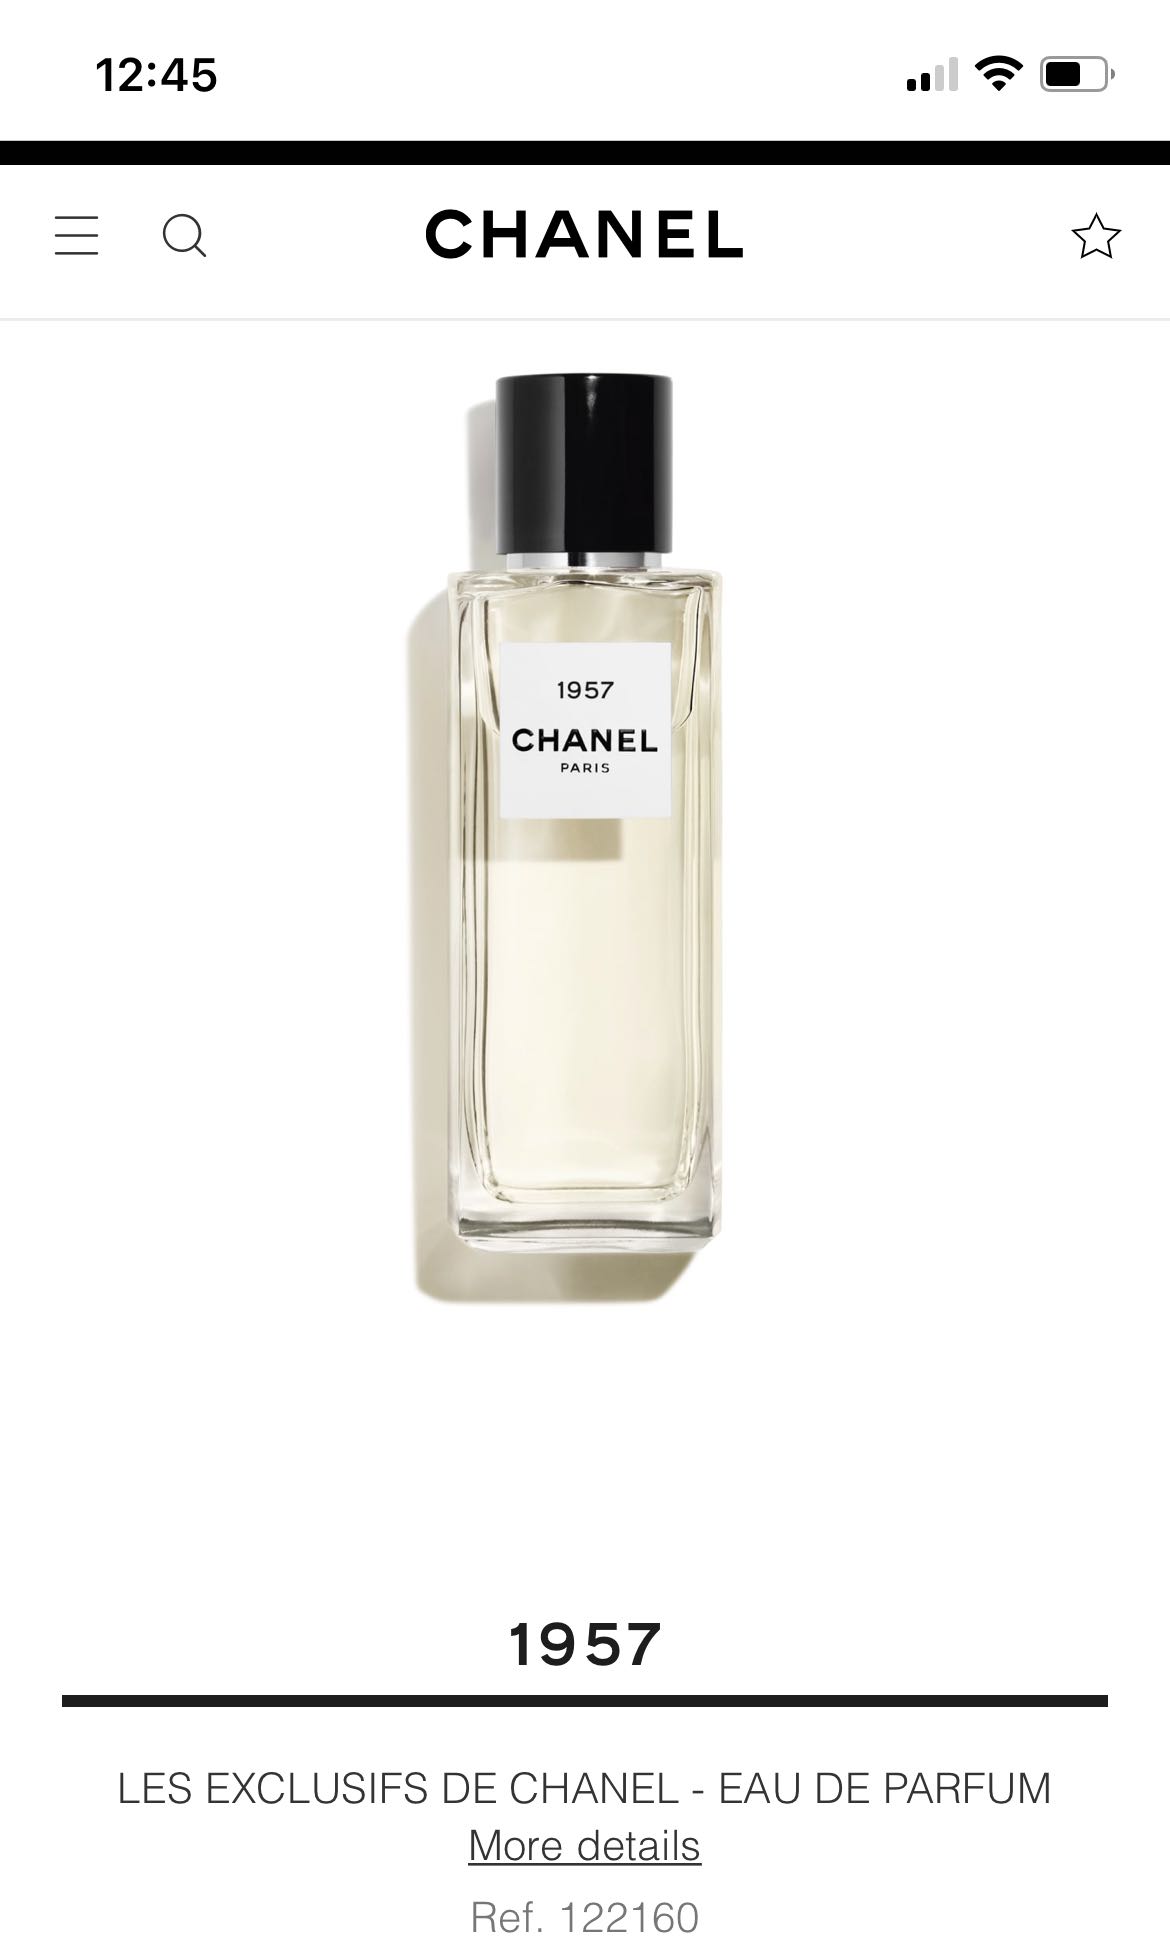 CHANEL, Skincare, Nib Chanel Paris 957 Eau De Parfum